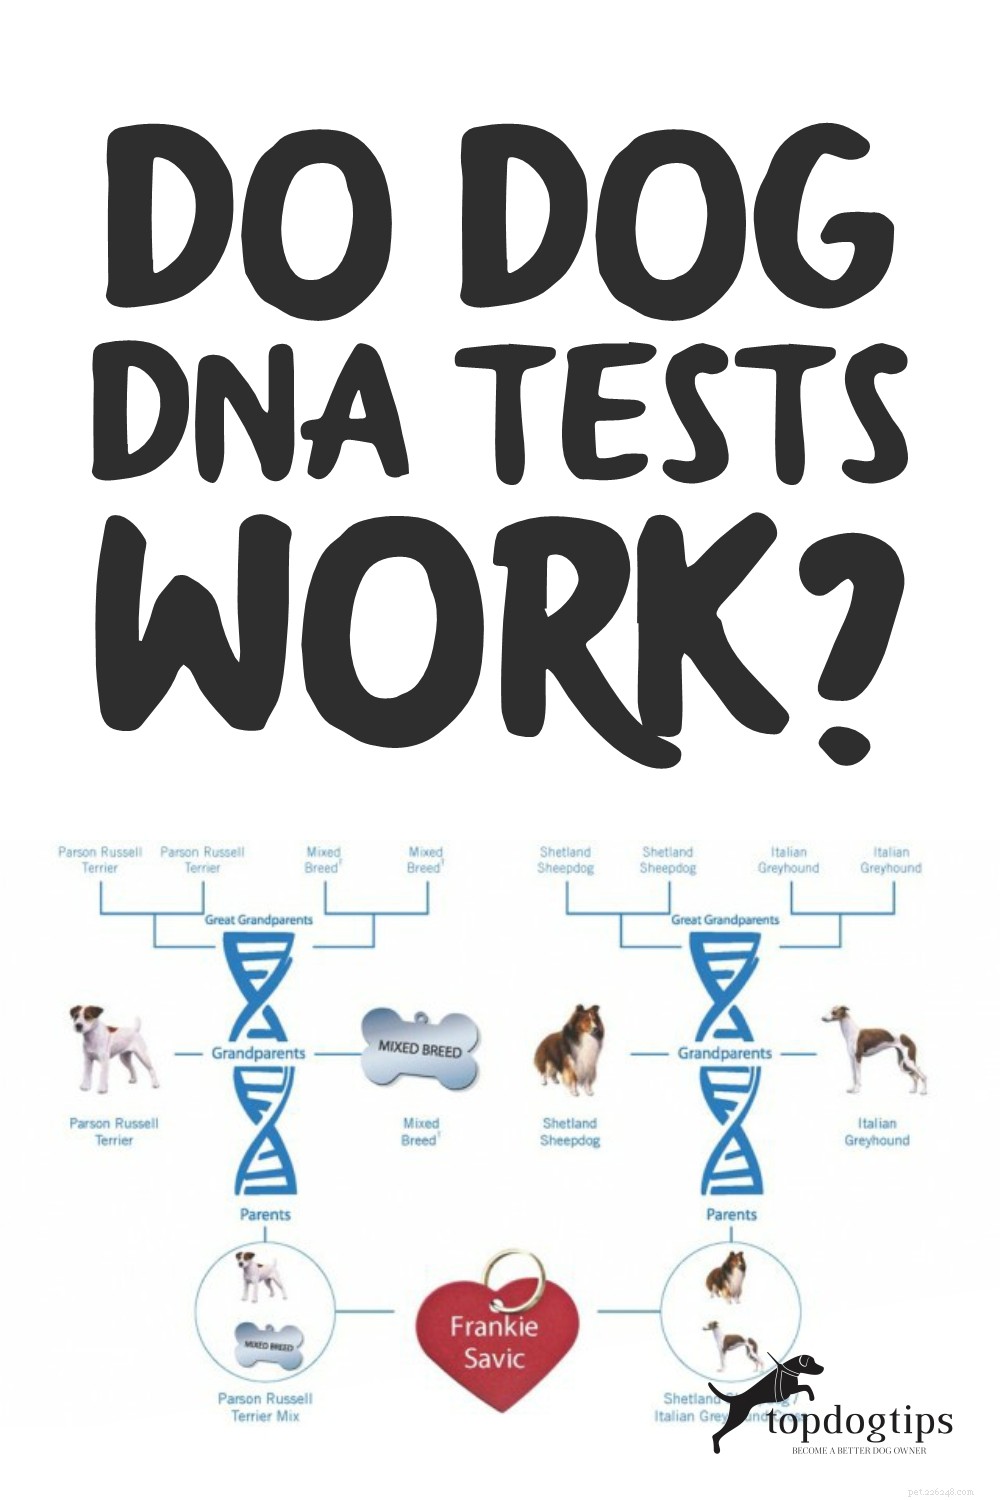 Les tests ADN pour chiens fonctionnent-ils ? Quelle est leur précision ?